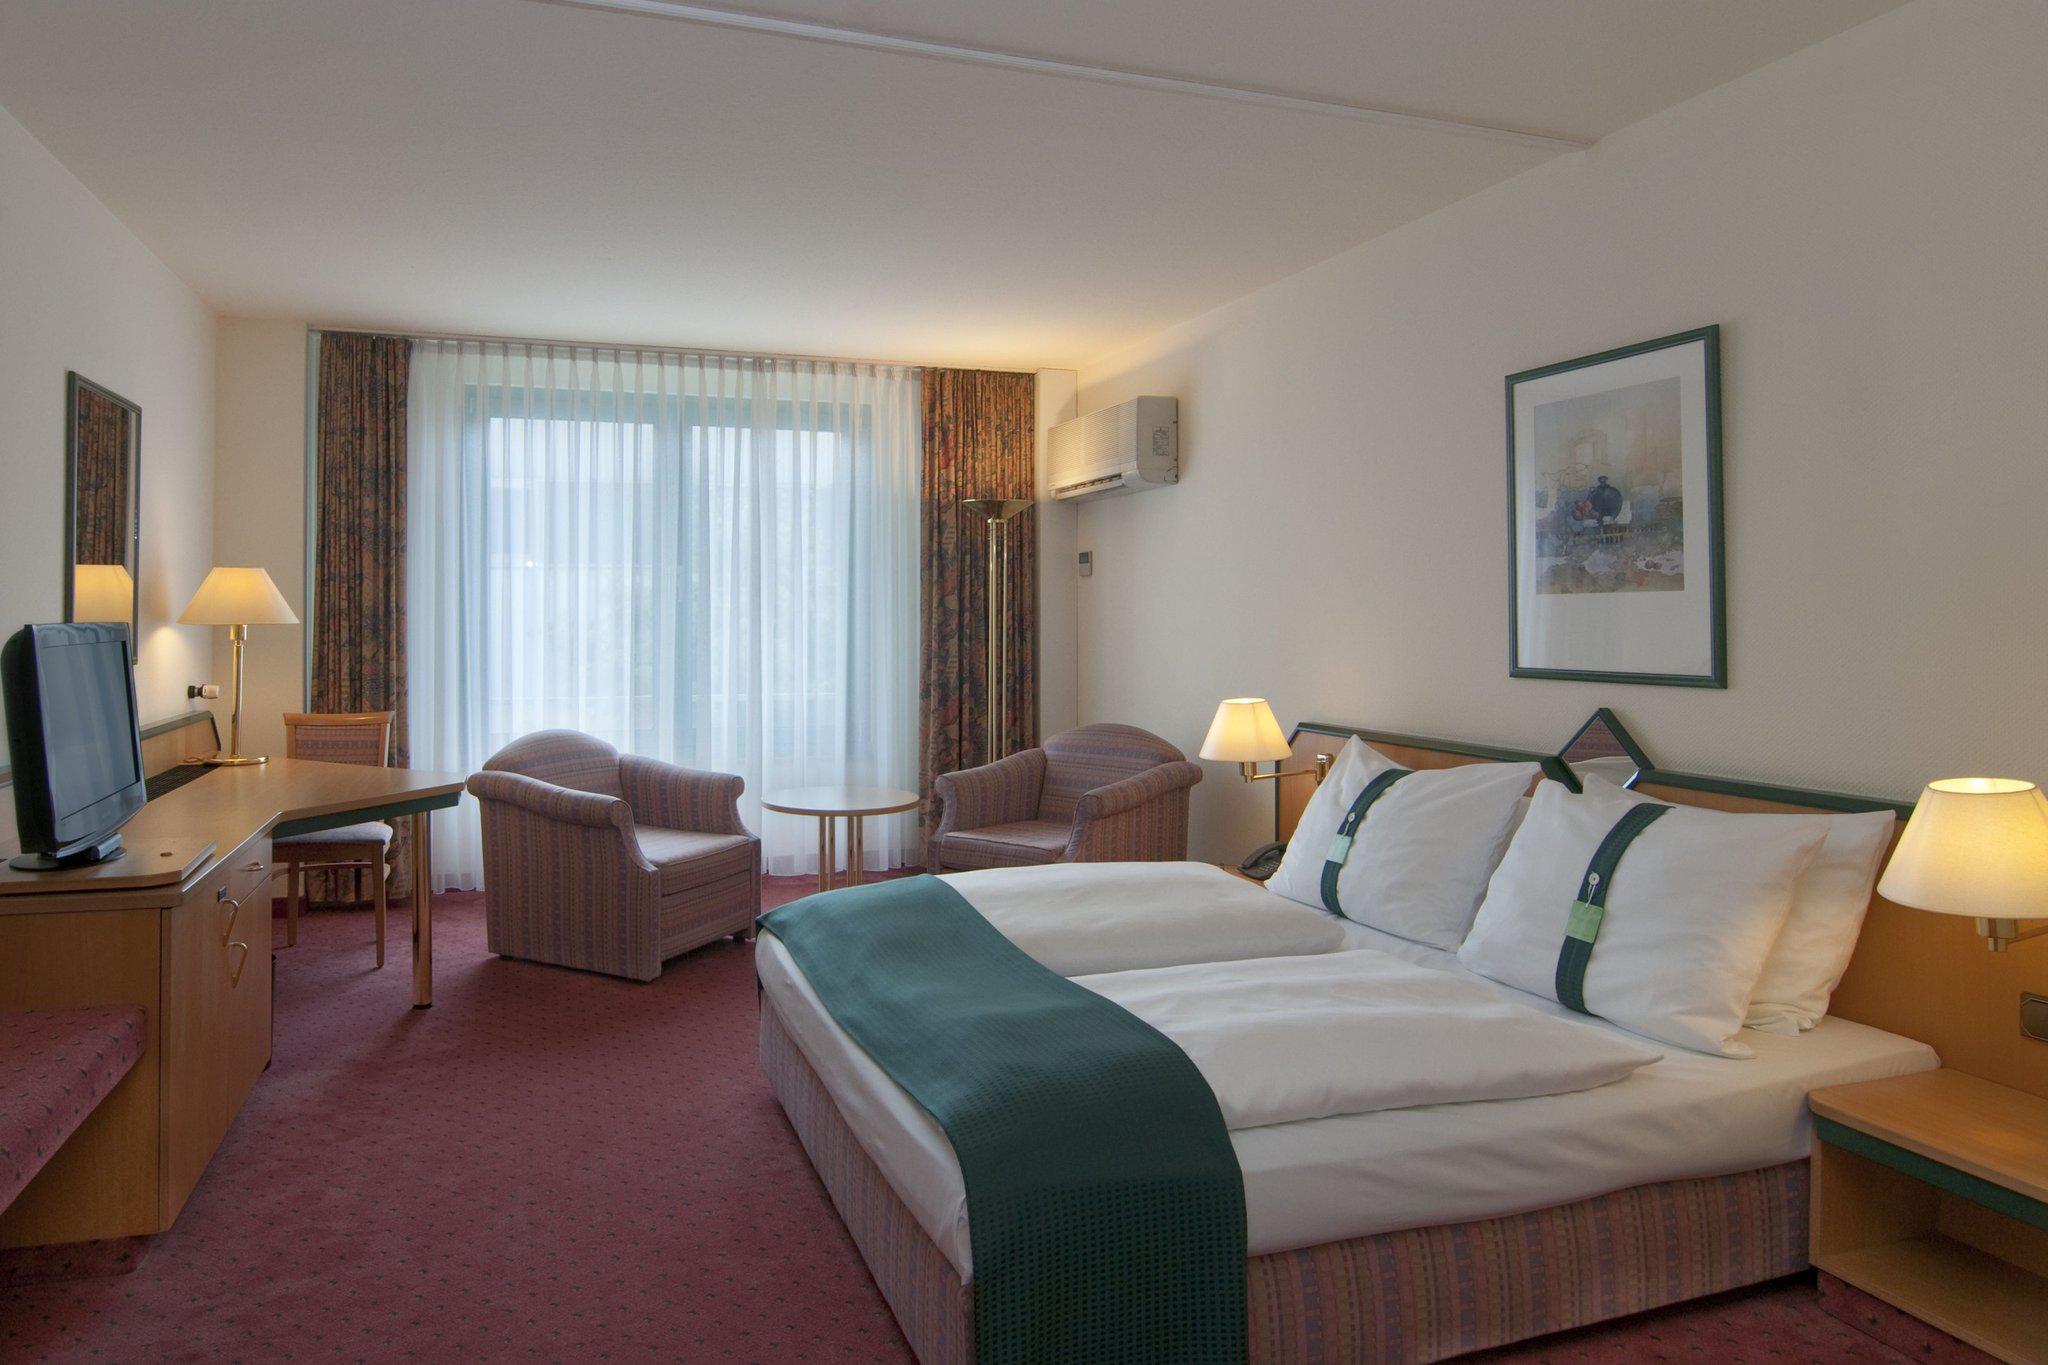 Holiday Inn Essen - City Centre, an IHG Hotel, Frohnhauser Strasse 6 in Essen